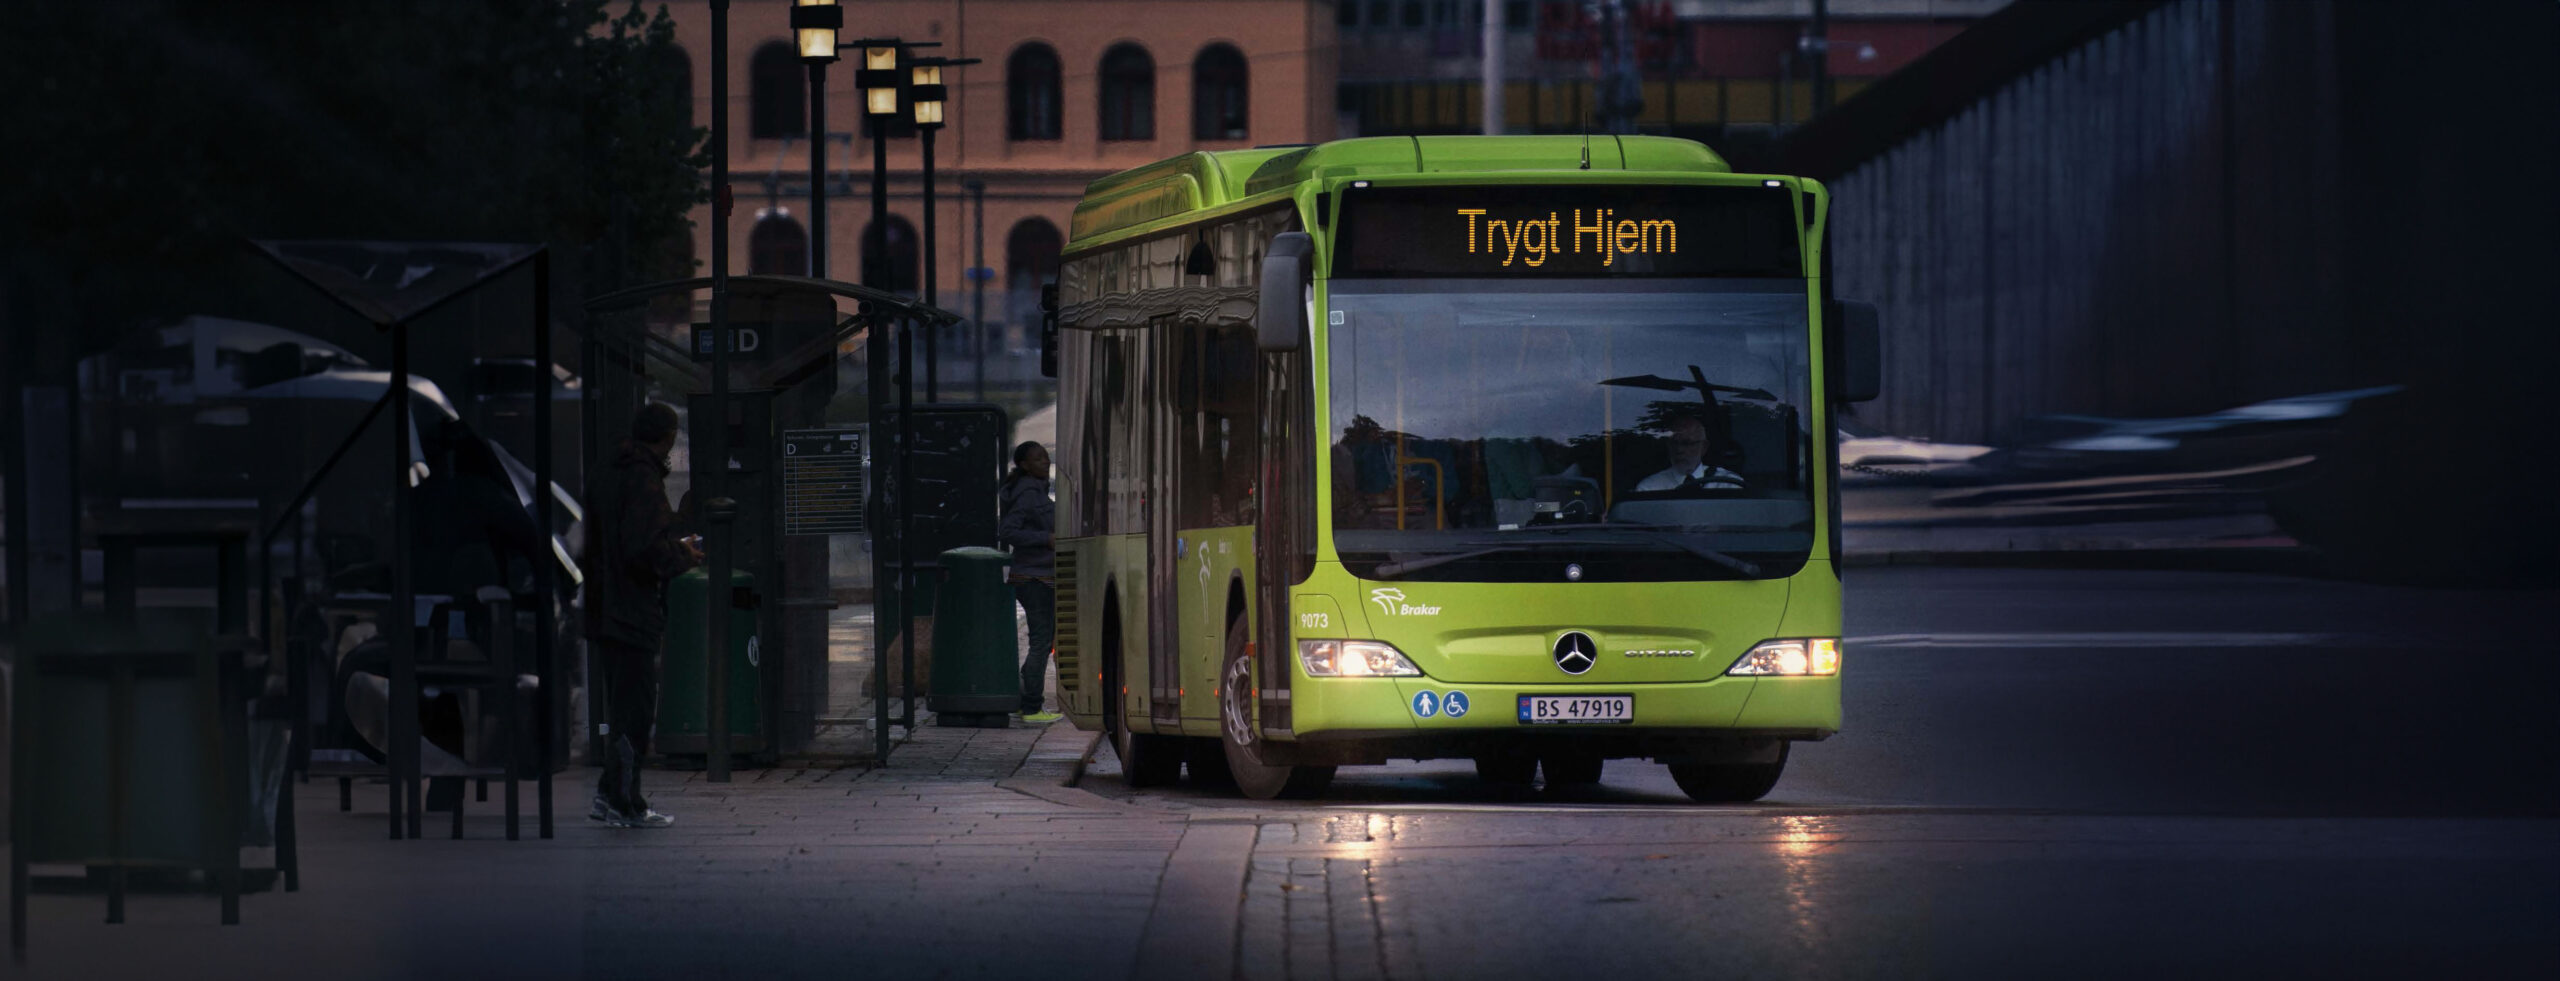 Bilde av nattbuss i Drammen.